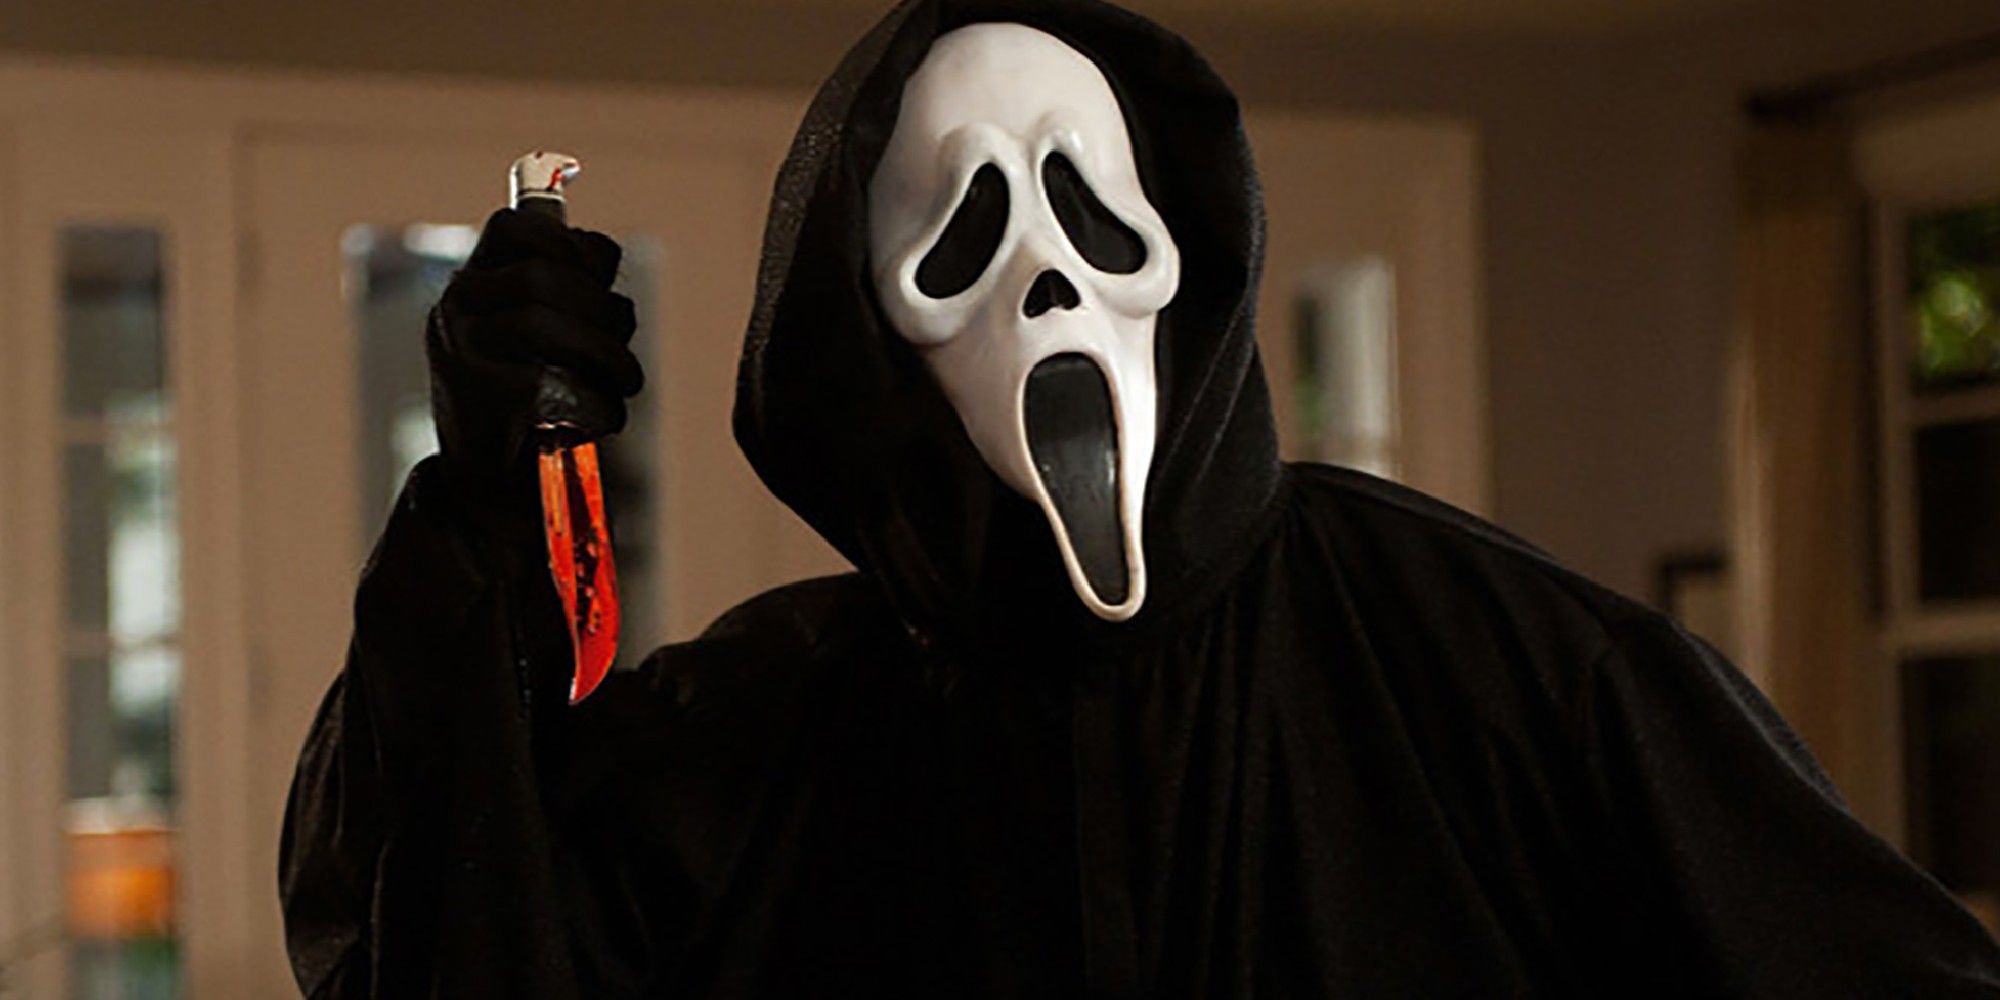 Ghostface raises a bloody knife in Scream